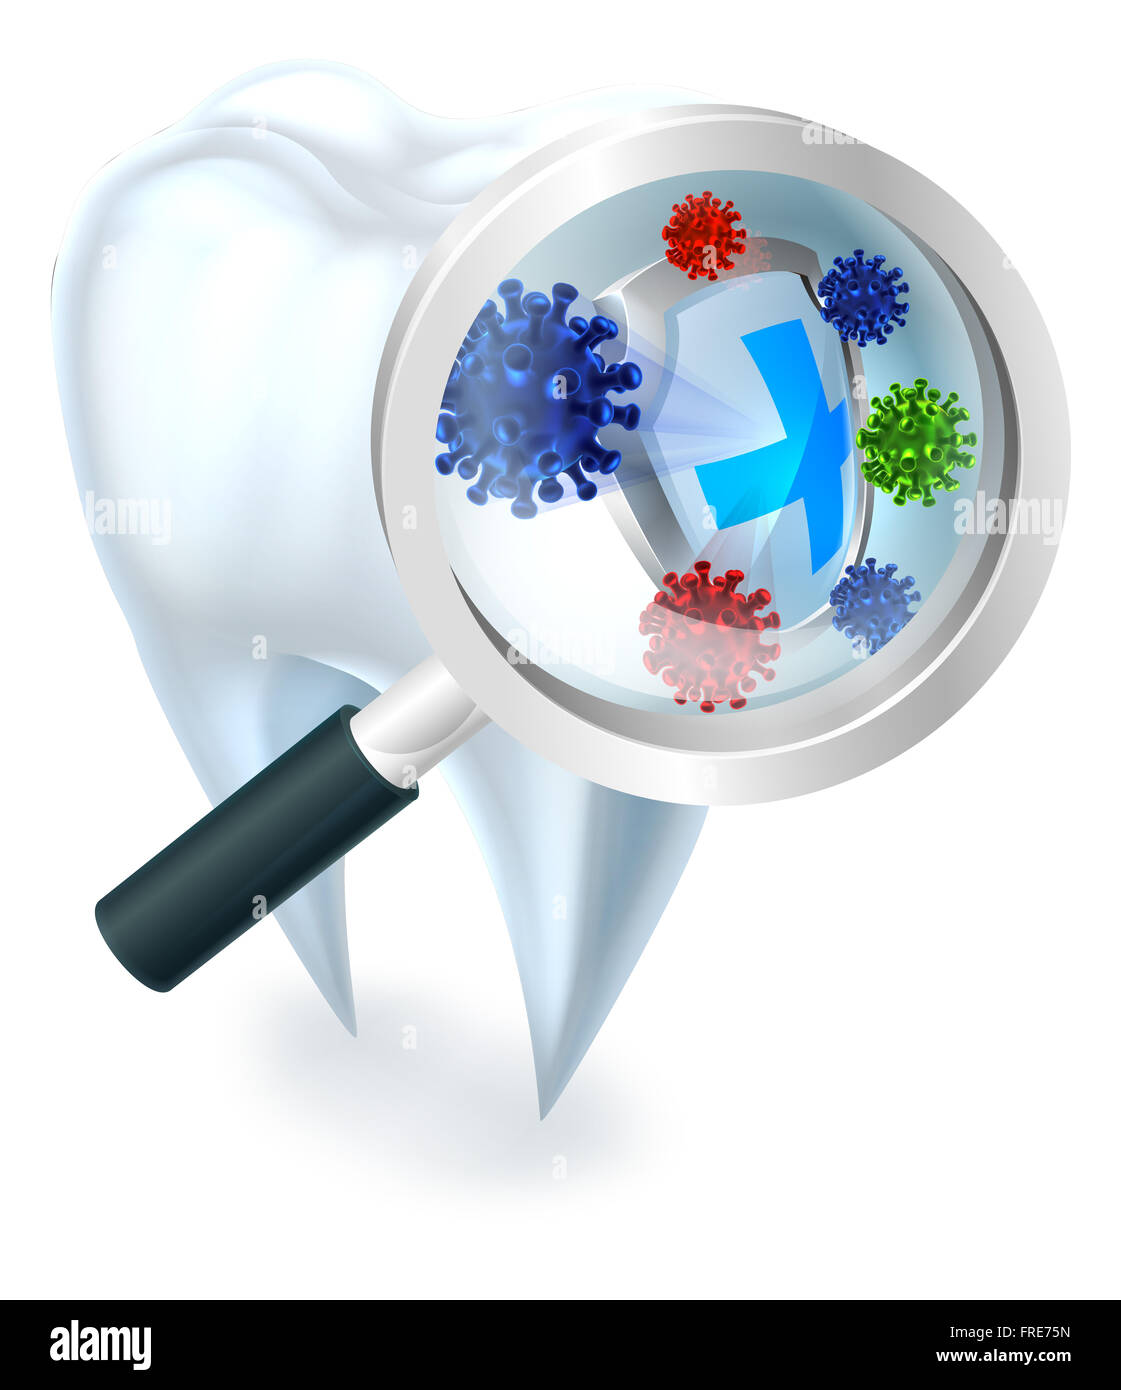 Une illustration d'une dent dentaire protégés contre les bactéries par une protection accrue par une loupe Banque D'Images